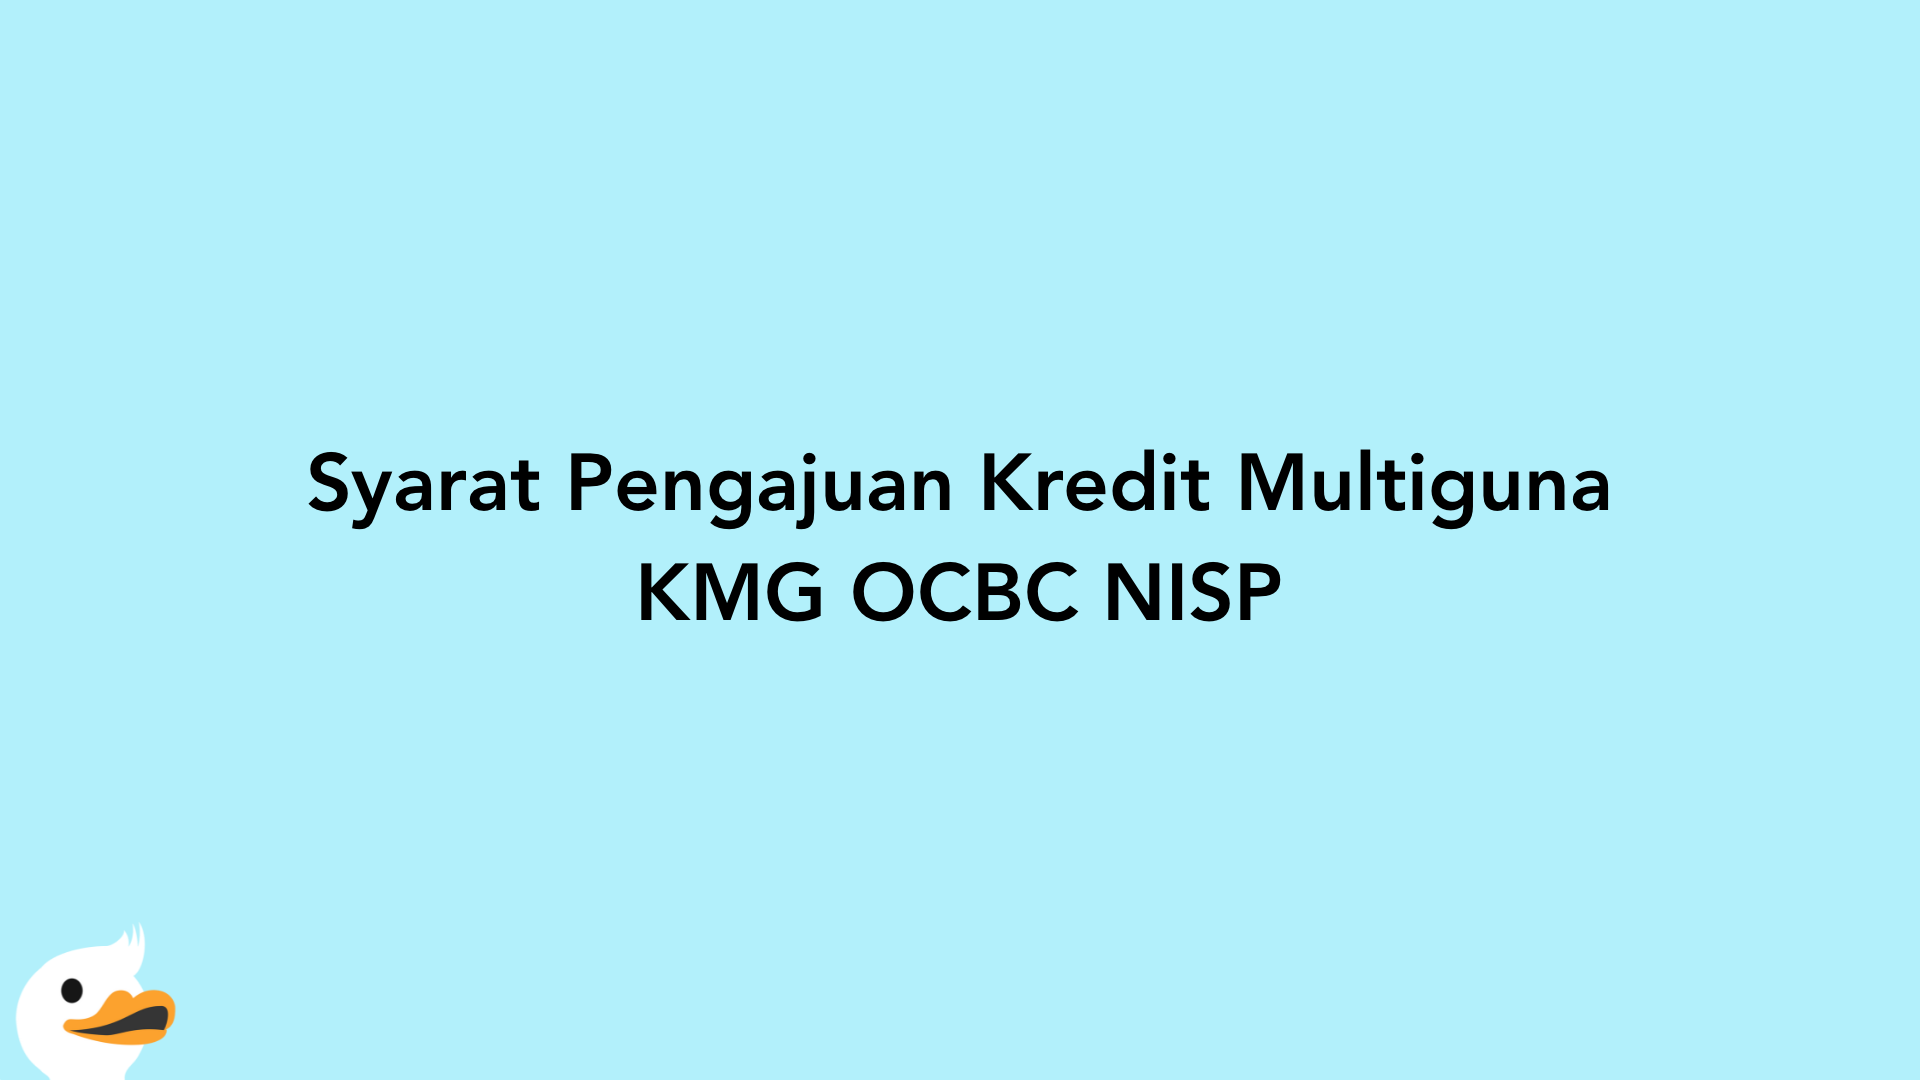 Syarat Pengajuan Kredit Multiguna KMG OCBC NISP